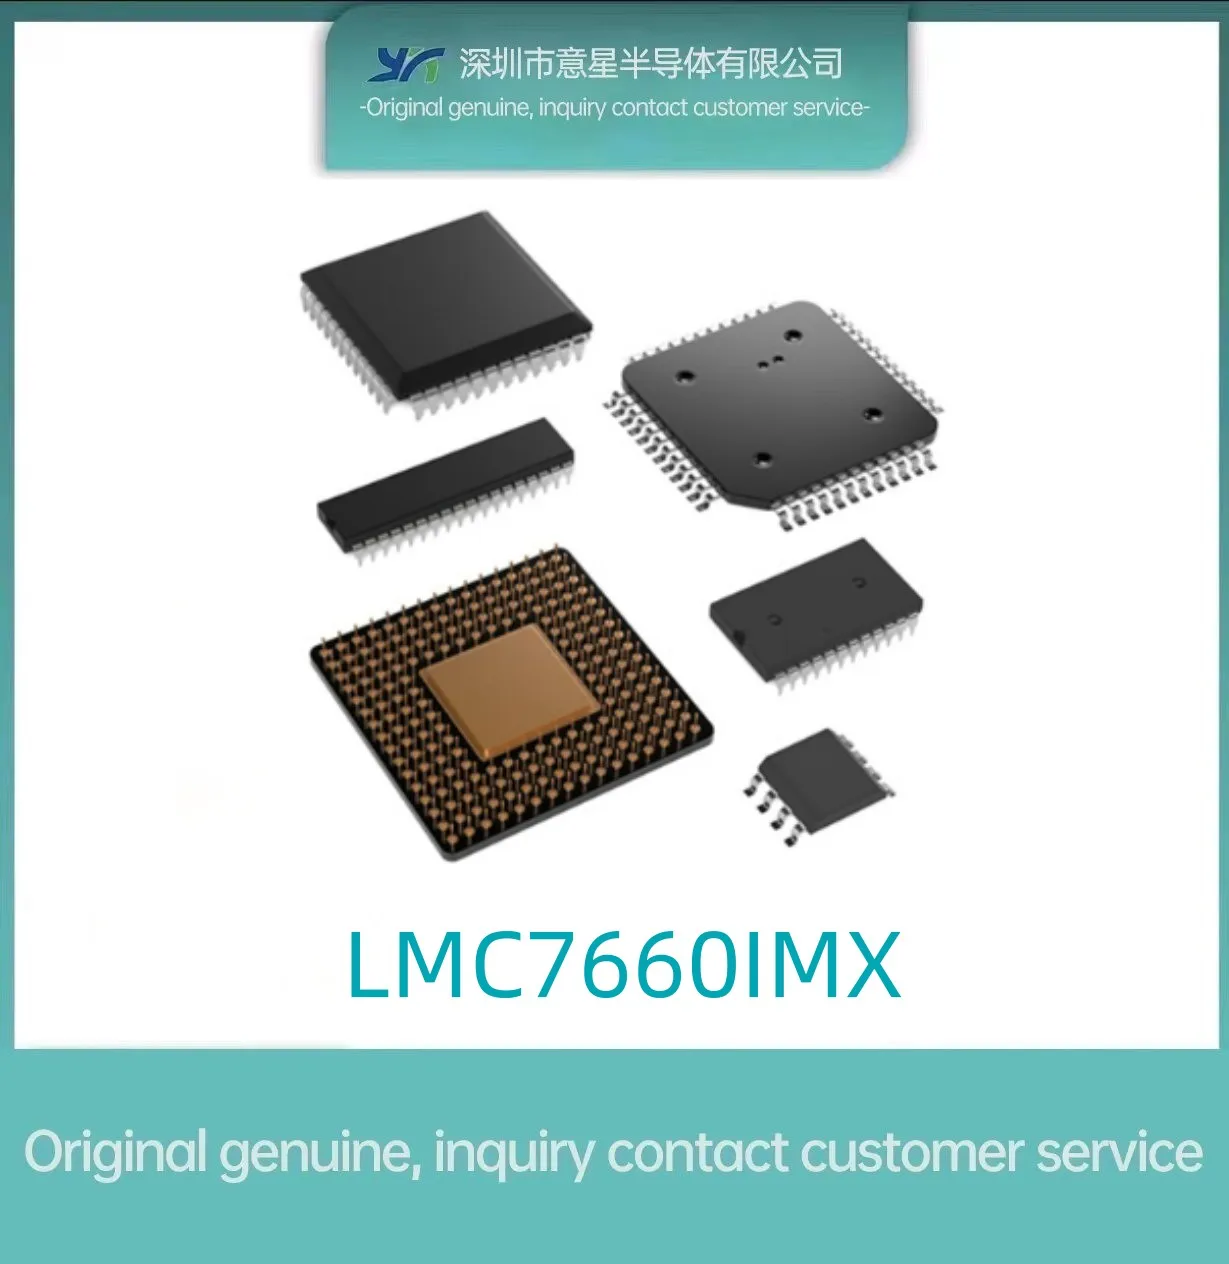 LMC7660IMX патч SOP8 оригинальная оригинальная микросхема преобразователя напряжения импульсного конденсатора